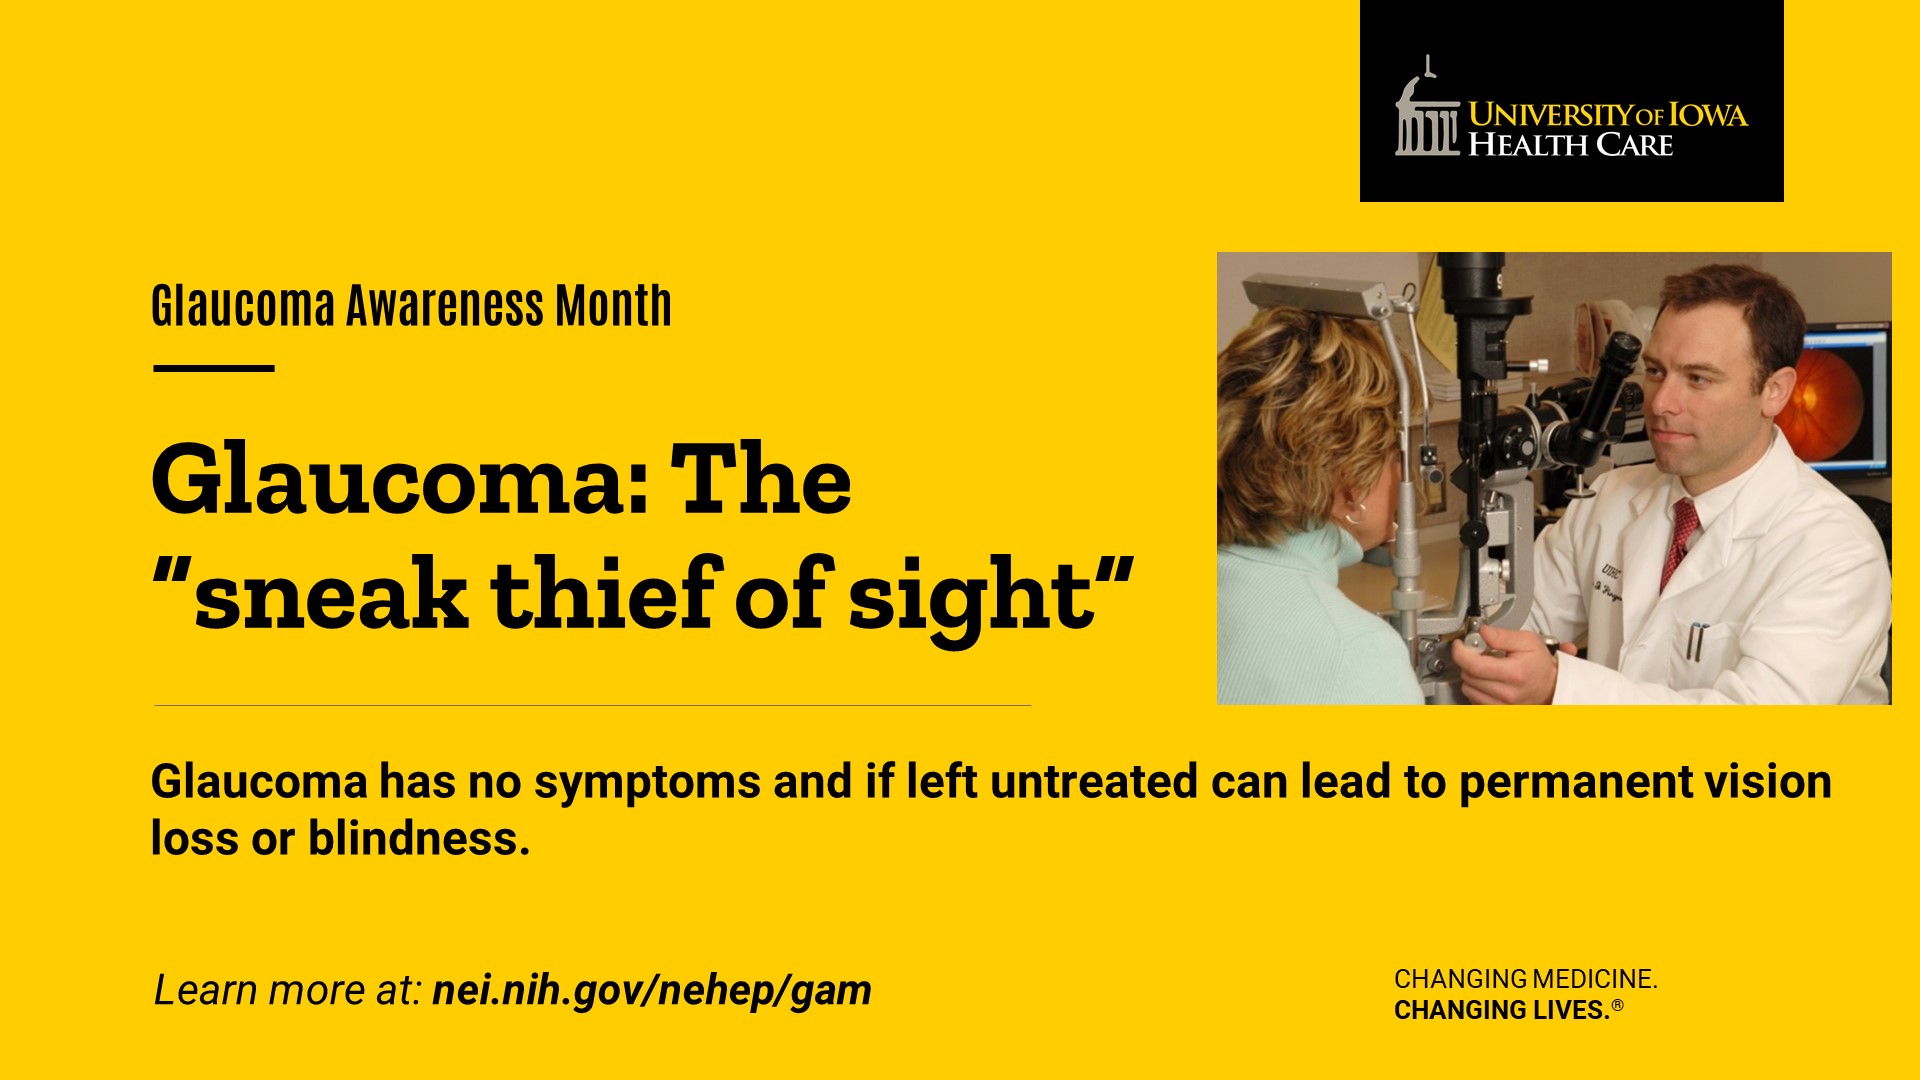 Glaucoma awareness